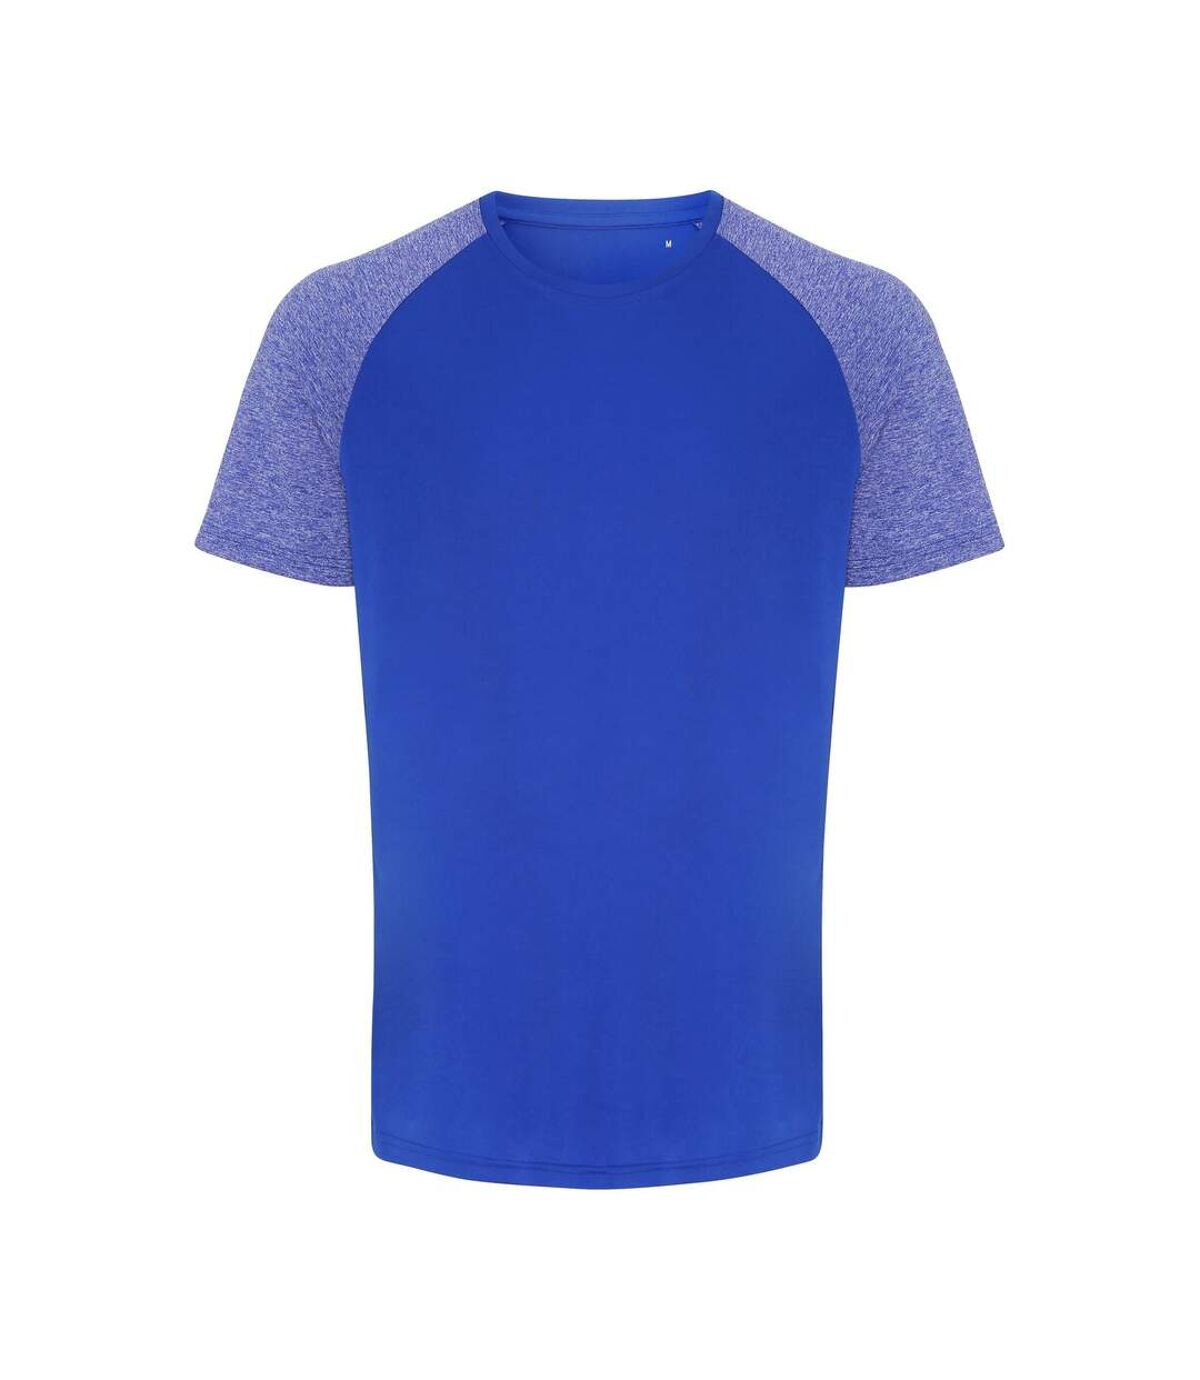 TriDri T-shirt Performance à manches contrastées pour hommes (Mélange royal/bleu) - UTRW6533